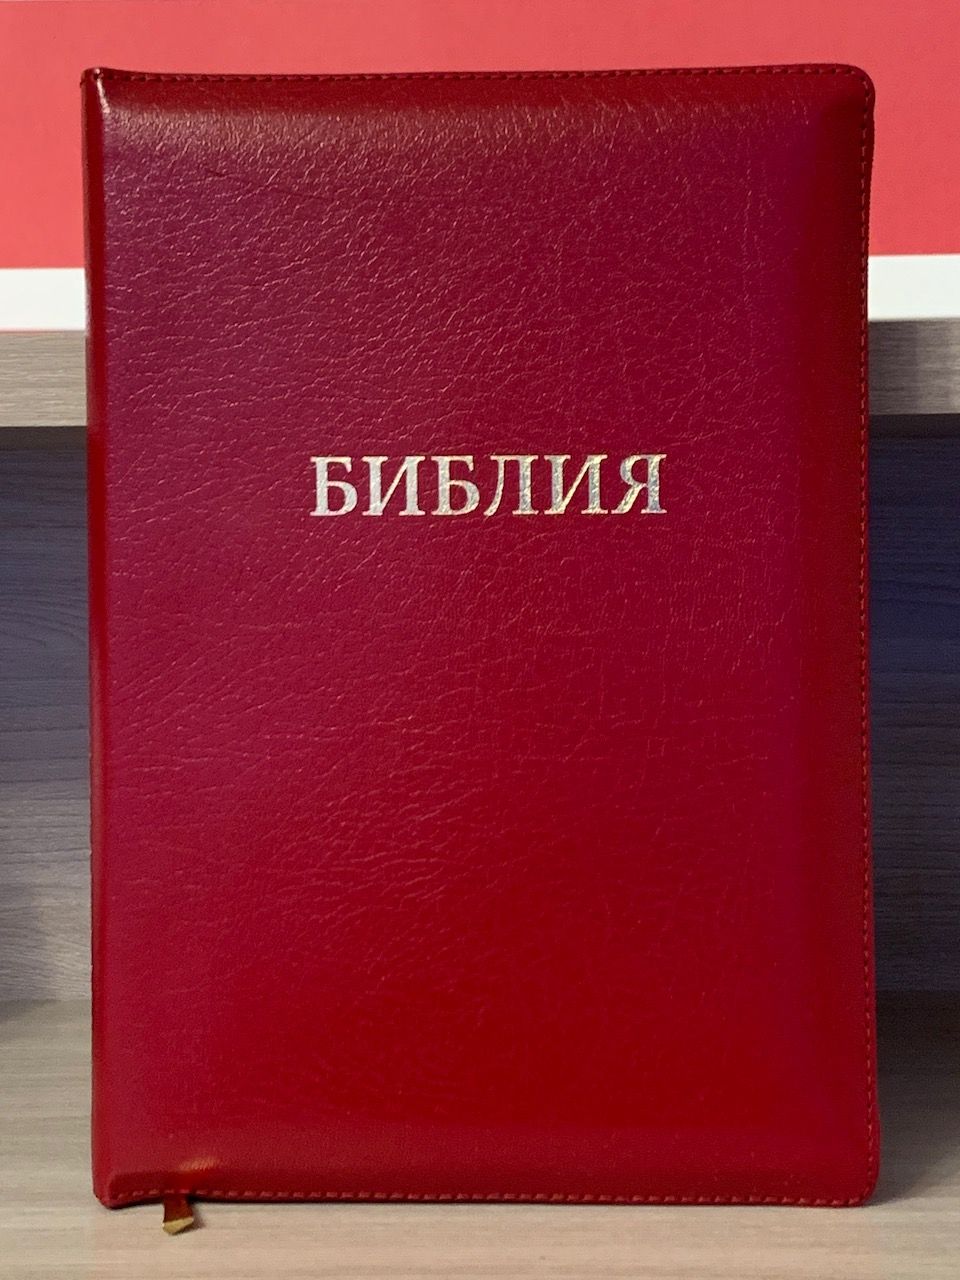 БИБЛИЯ 077zti формат, переплет из натуральной кожи на молнии с индексами, надпись золотом "Библия", цвет  красный металлик, большой формат, 180*260 мм, цветные карты, крупный шрифт